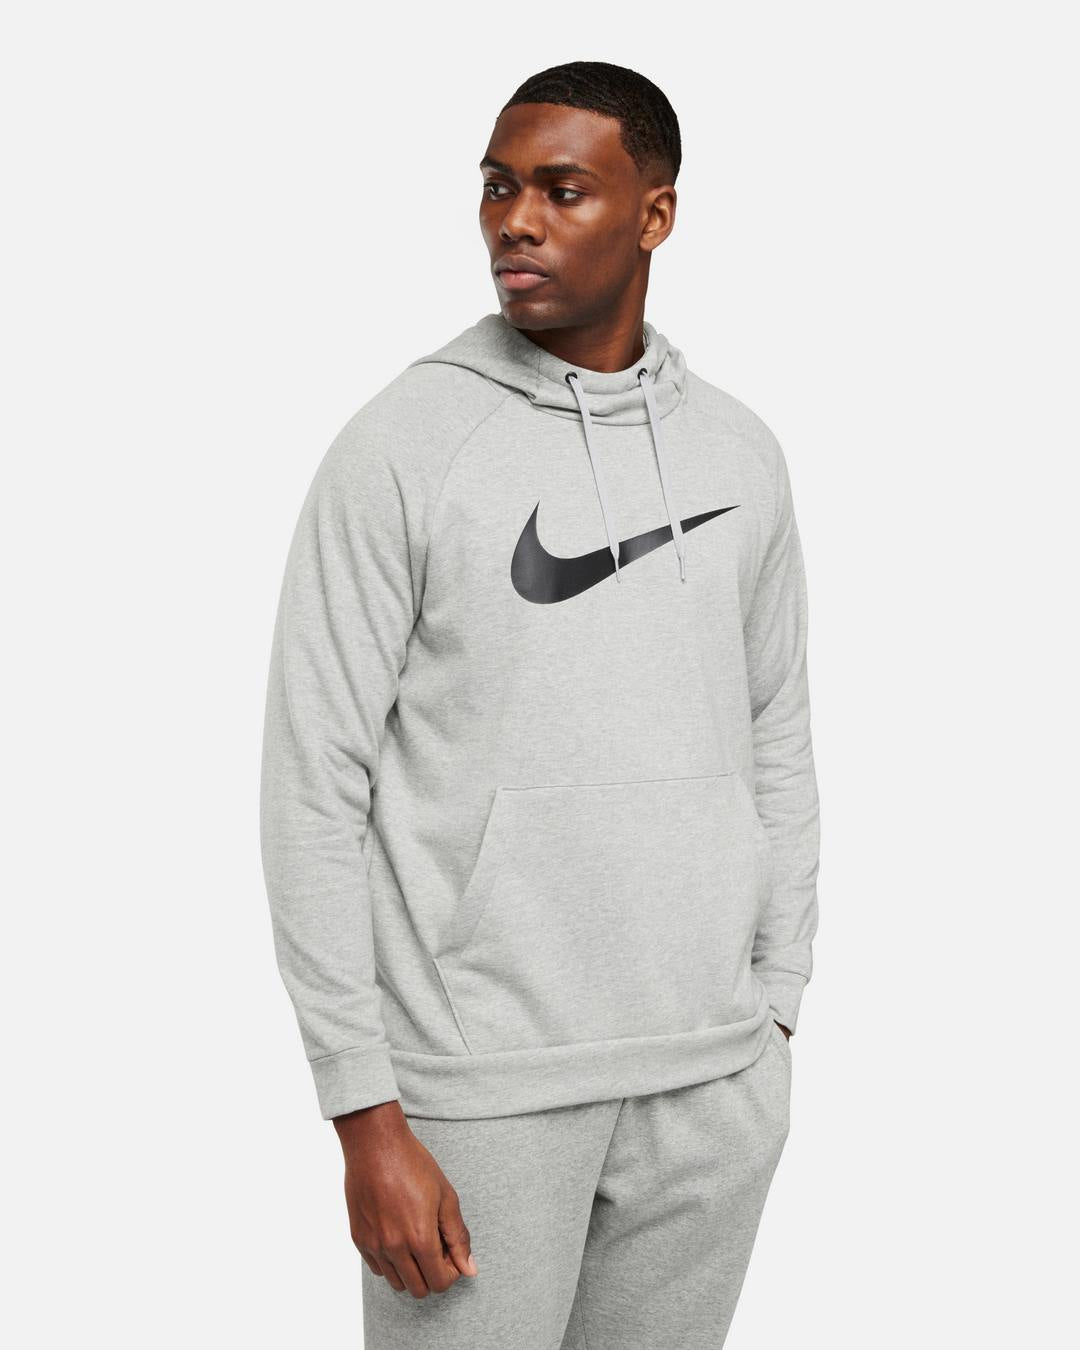 Nike Dry Graphic Hoodie - Grey/Black